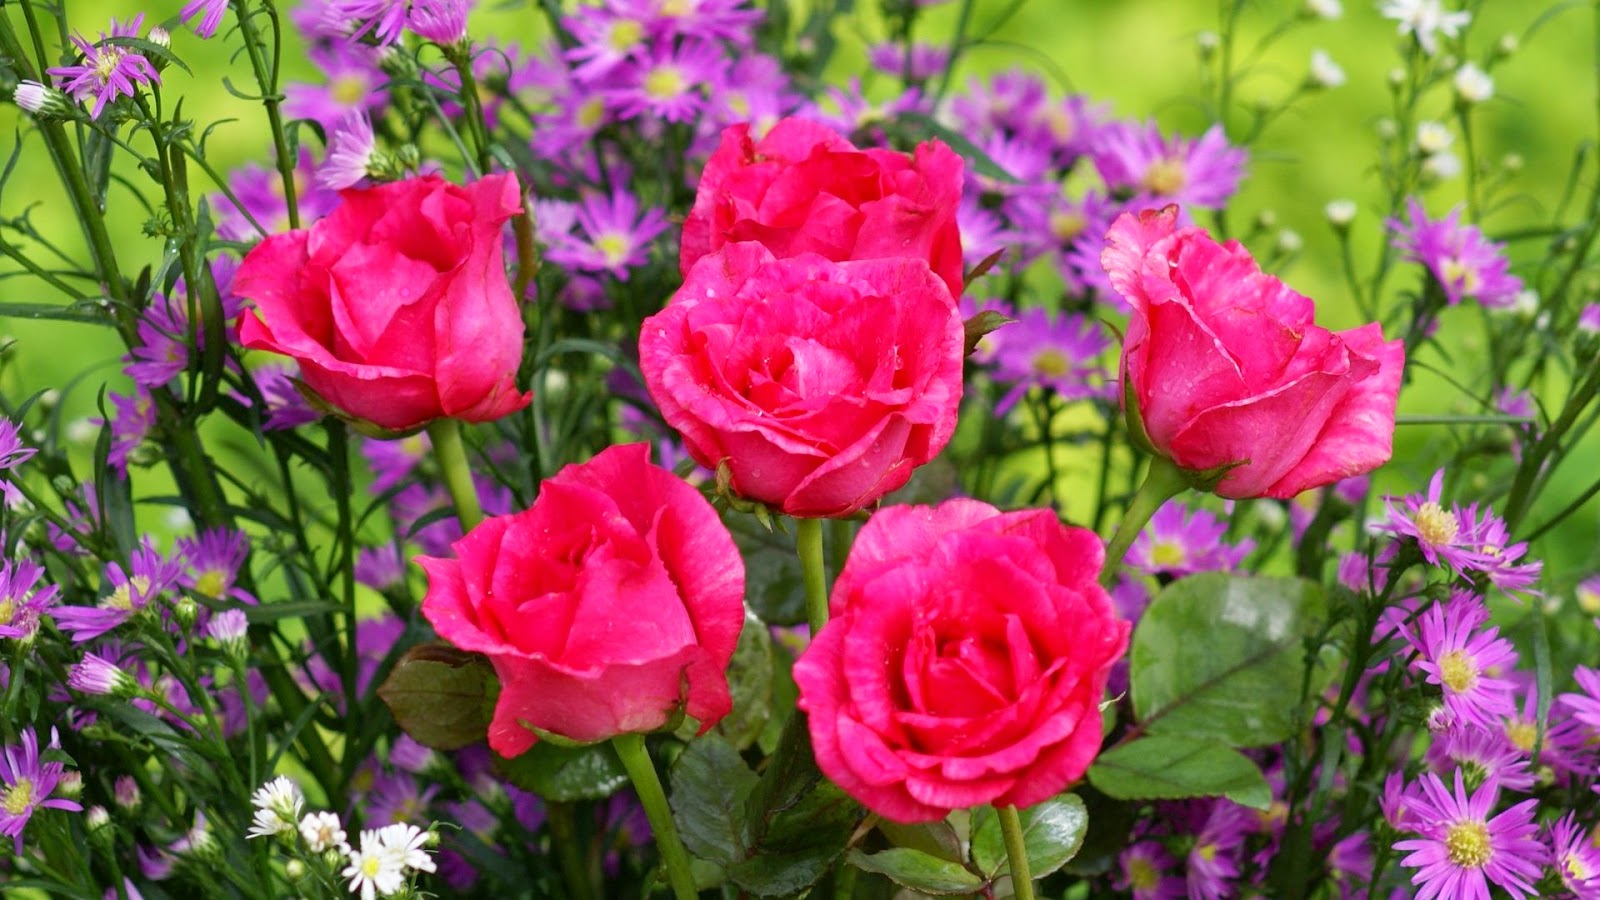 https://2.bp.blogspot.com/-uv-_h9HqPAo/VT_6ee8QYSI/AAAAAAAAuMc/6Fx-9aA7eCU/s1600/roses-widescreen-wallpapers-pink-rose-5571.jpg